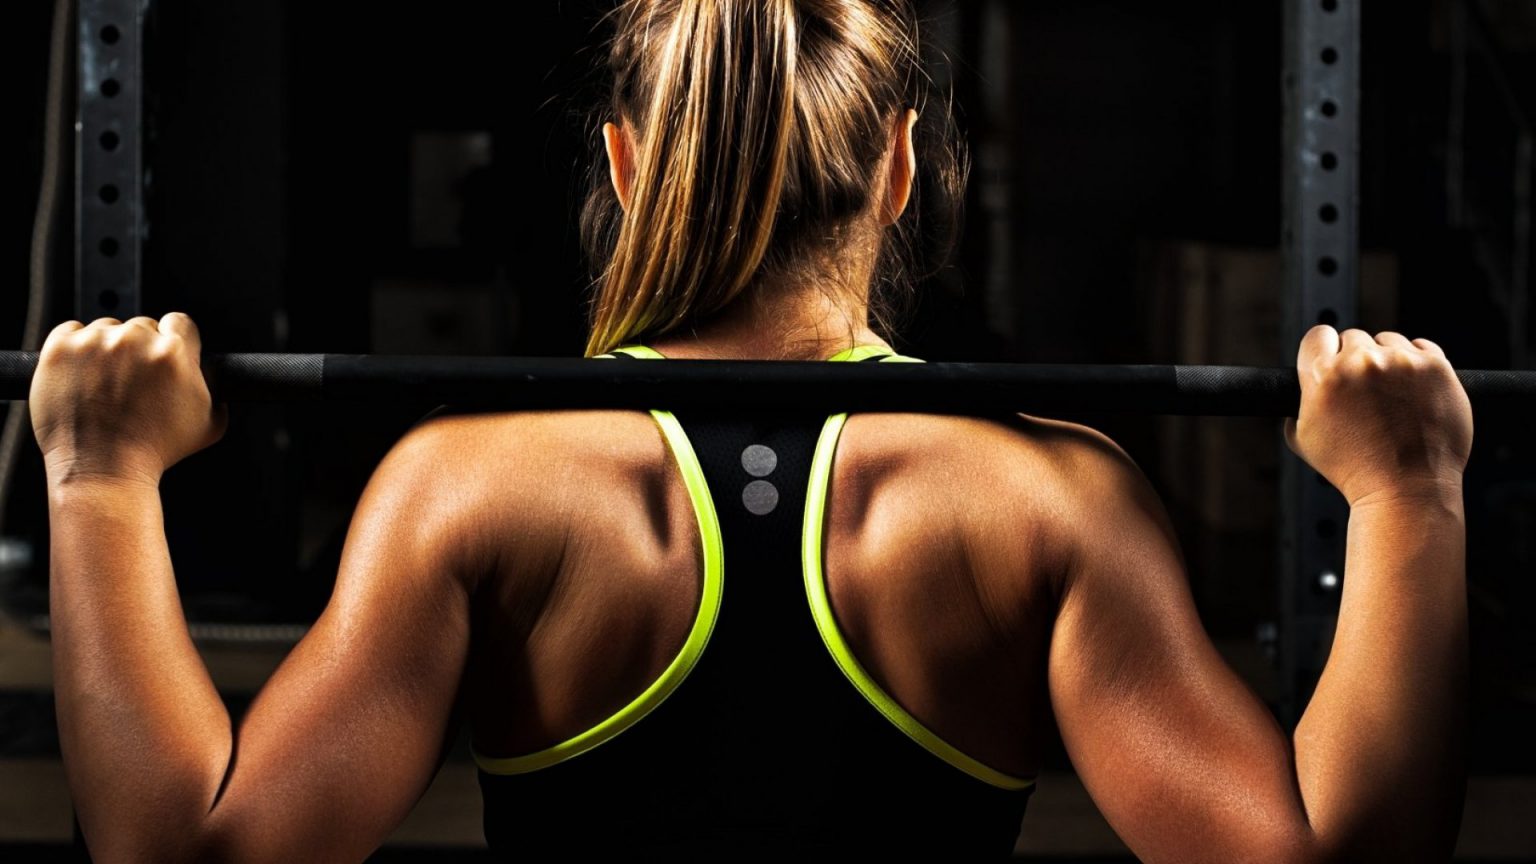 حرکات سرشانه 6 تمرین تقویت عضلات سرشانه برنامه ورزشی آنلاین فیتامین 